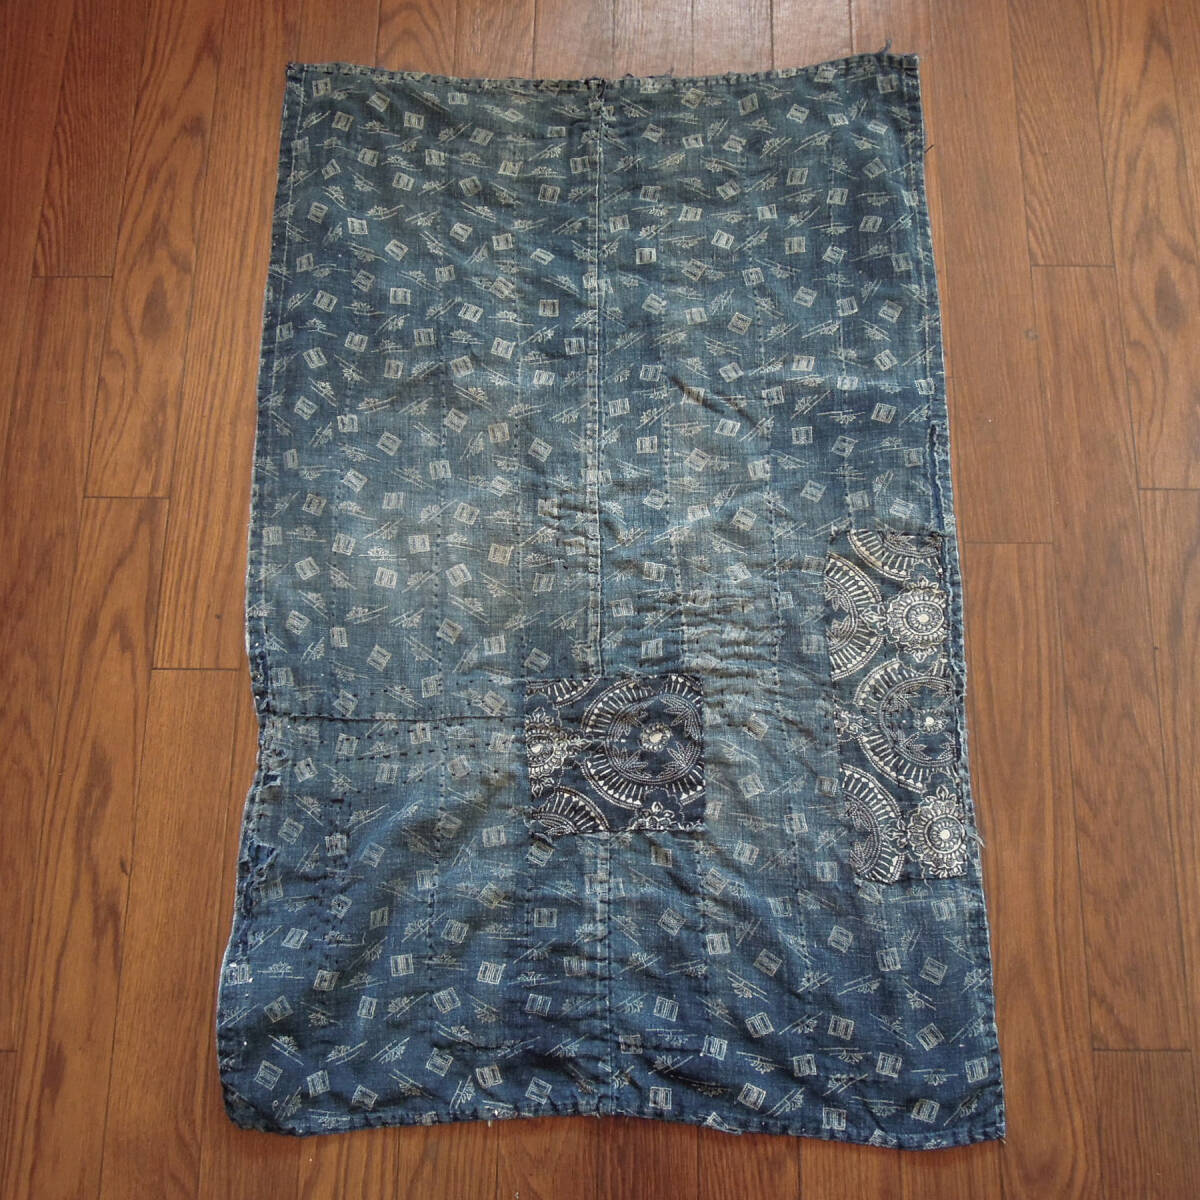 襤褸 敷物 ラグ 藍染 継ぎ接ぎ 手縫い 木綿 古布 ボロ インディゴ フェード Vintage cotton rug indigo handmade textile fabrics